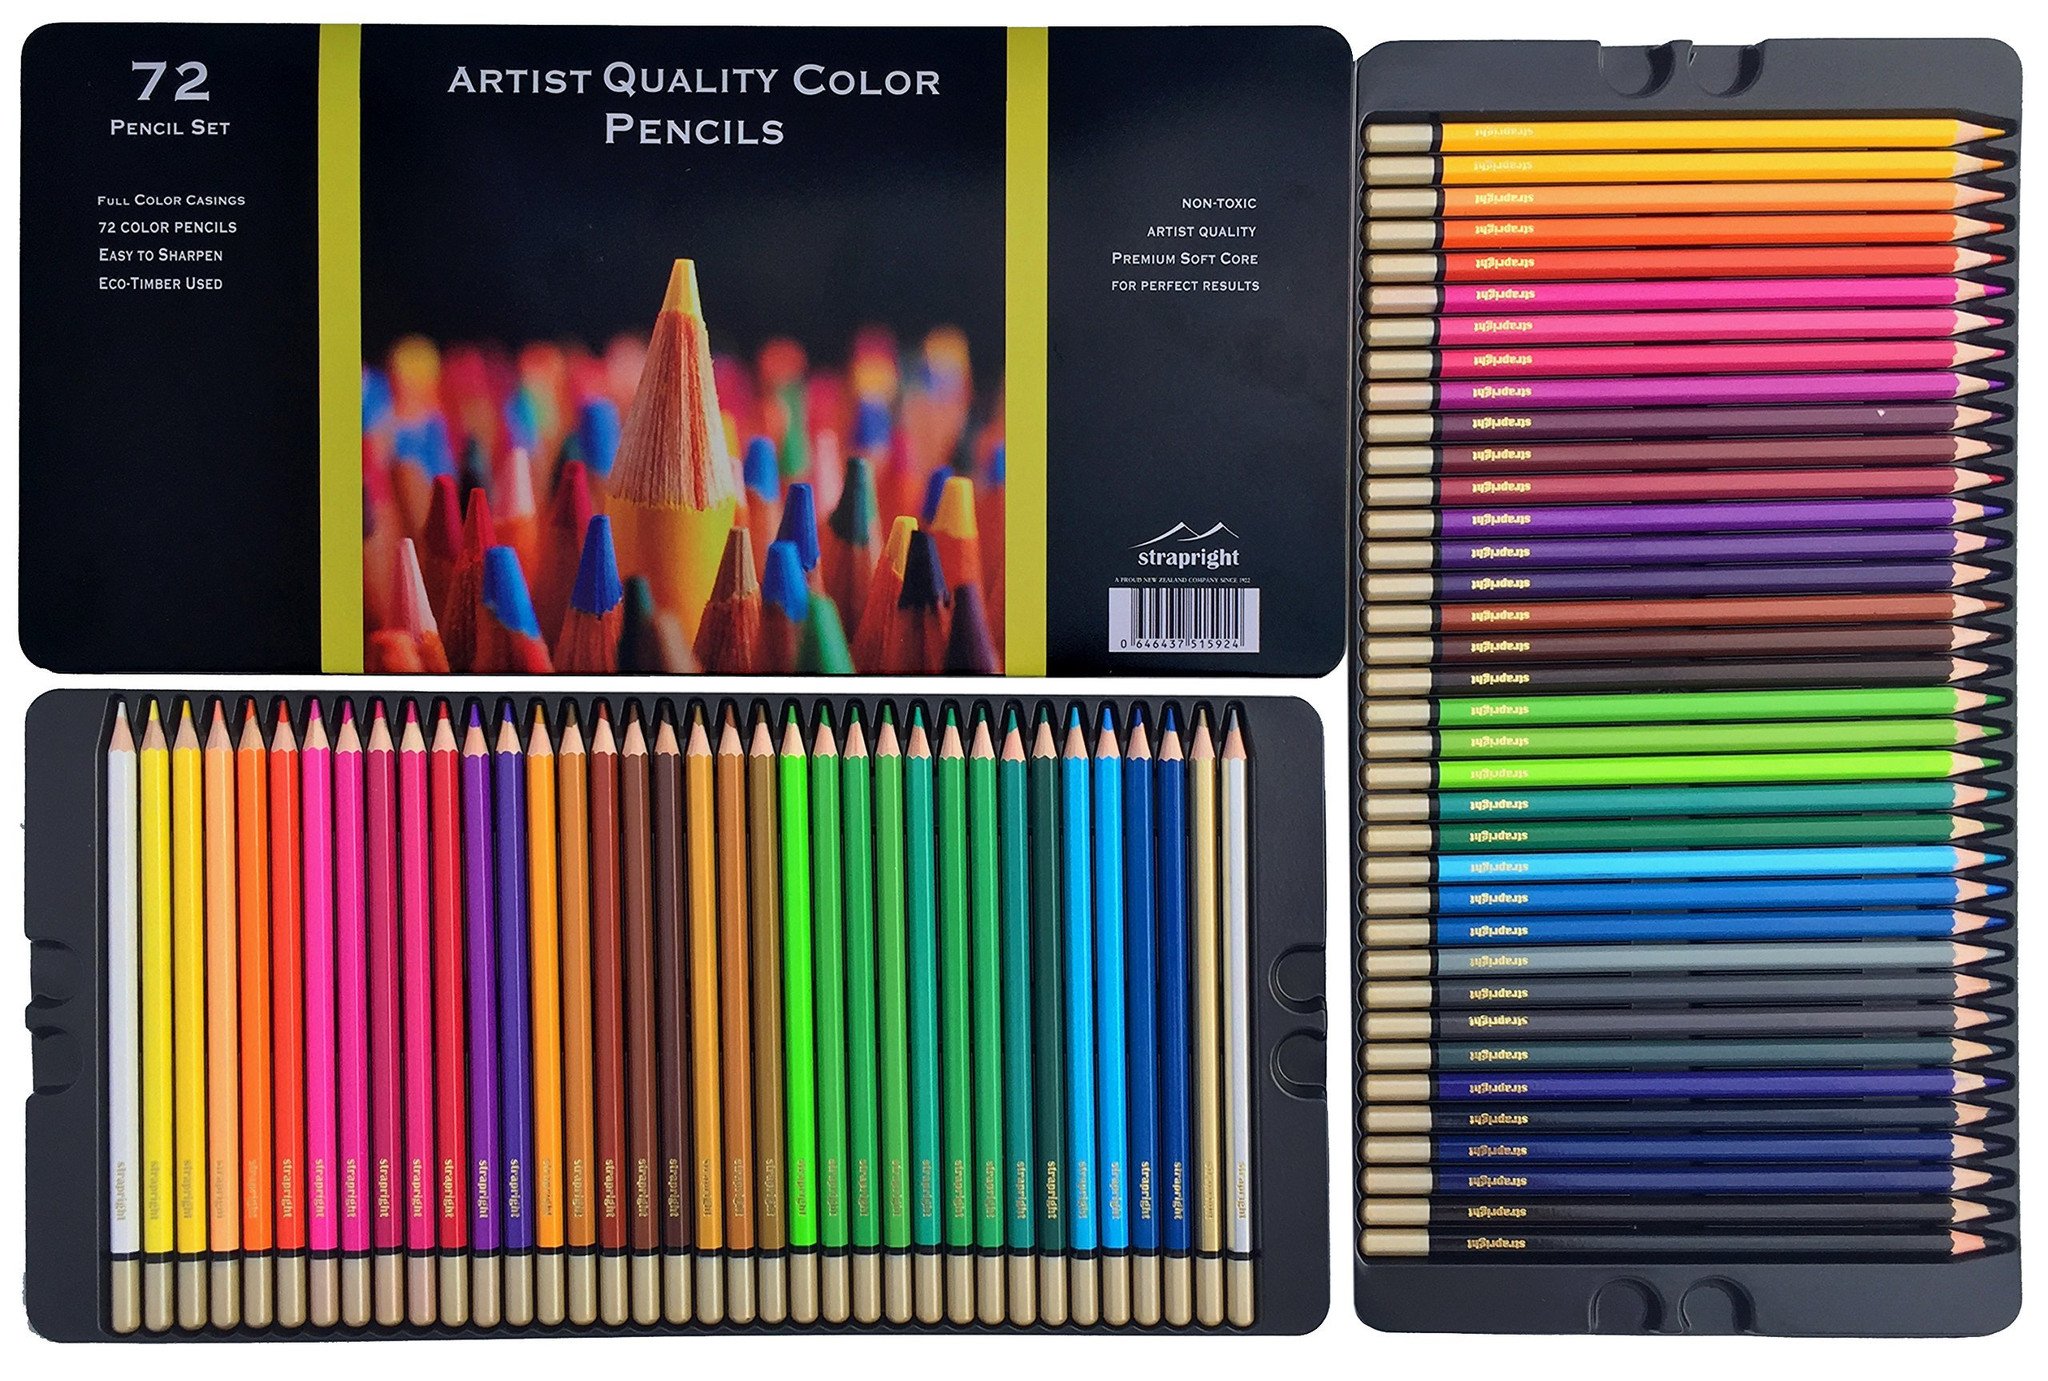 Strapright Premium Colored Pencils -72 Colors - Colorantebook